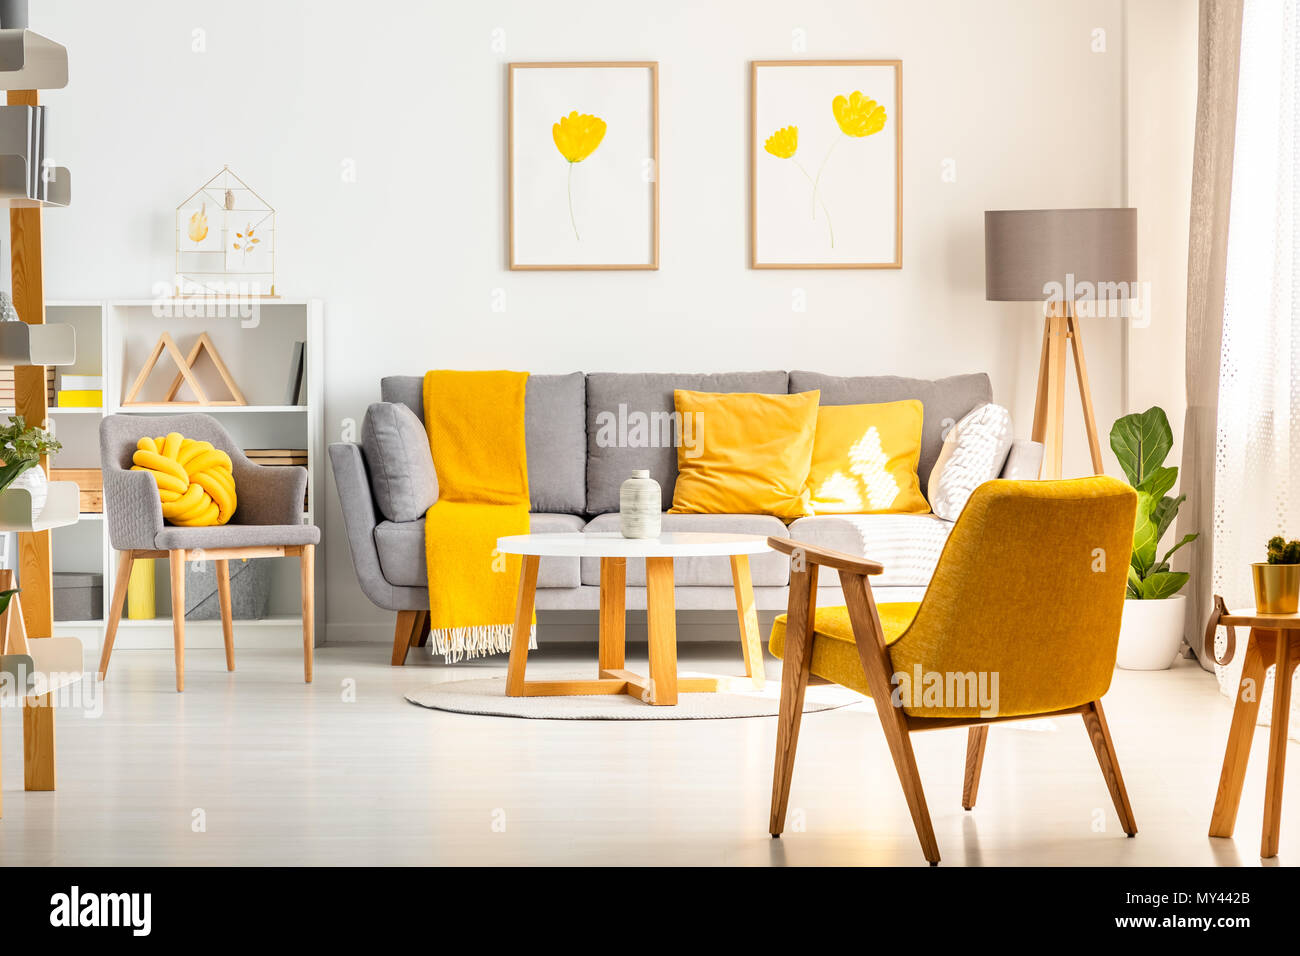 Poltrona di colore giallo in bianco salotto interno con poster sopra divano grigio con cuscini. Foto reale Foto Stock